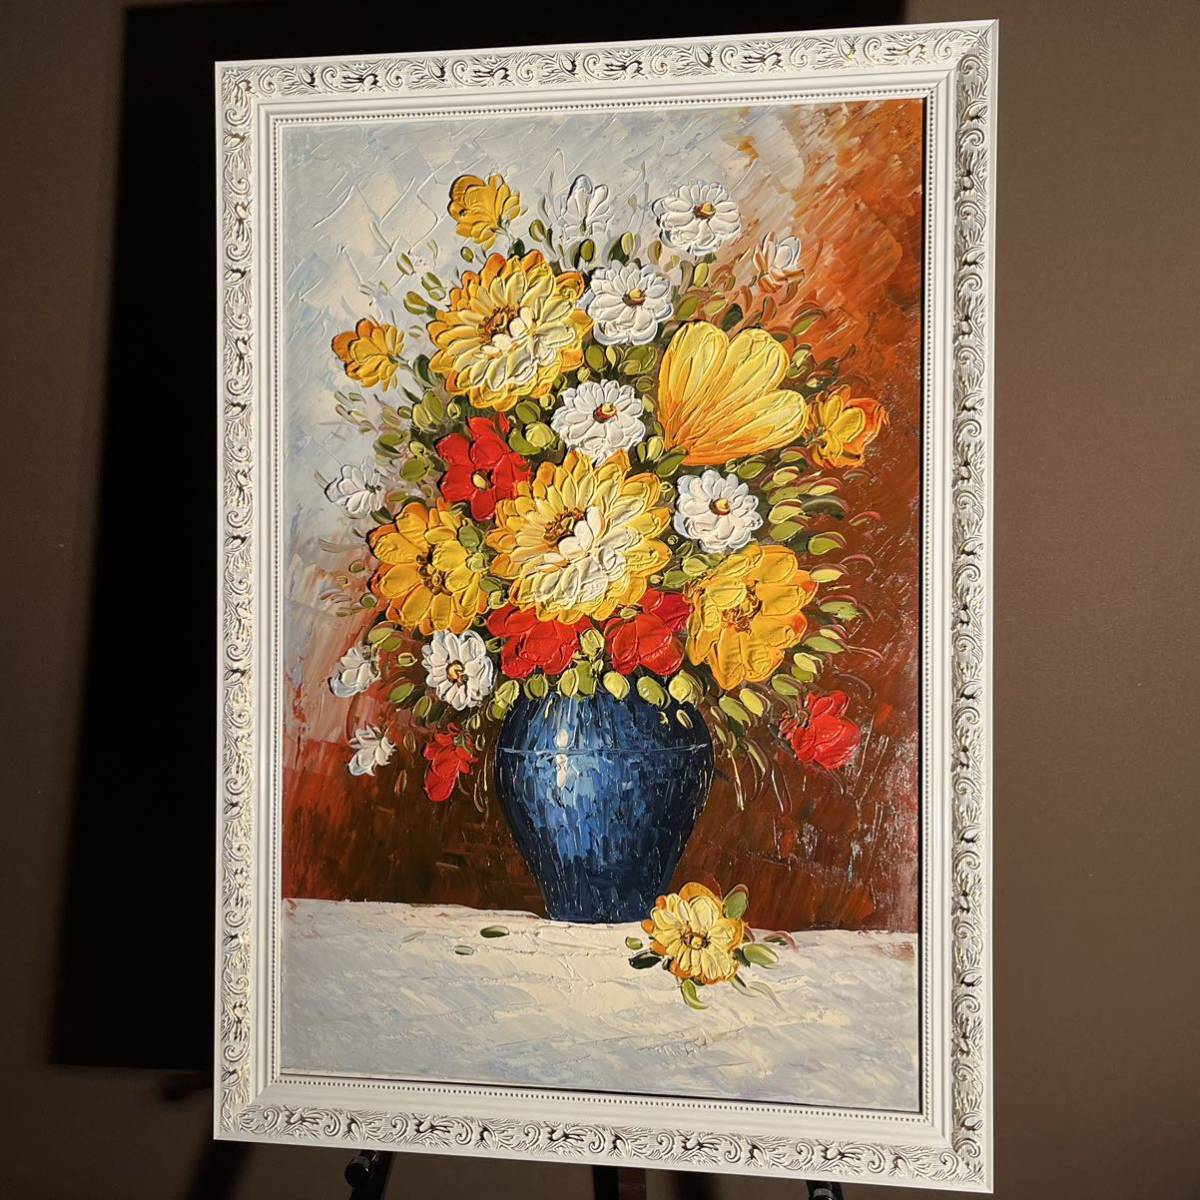 ★Excelente★ Cuadro al óleo pintado a mano Flores en un jarrón (grande) con marco Pintura Interior Pintura al óleo, Cuadro, Pintura al óleo, Naturaleza, Pintura de paisaje